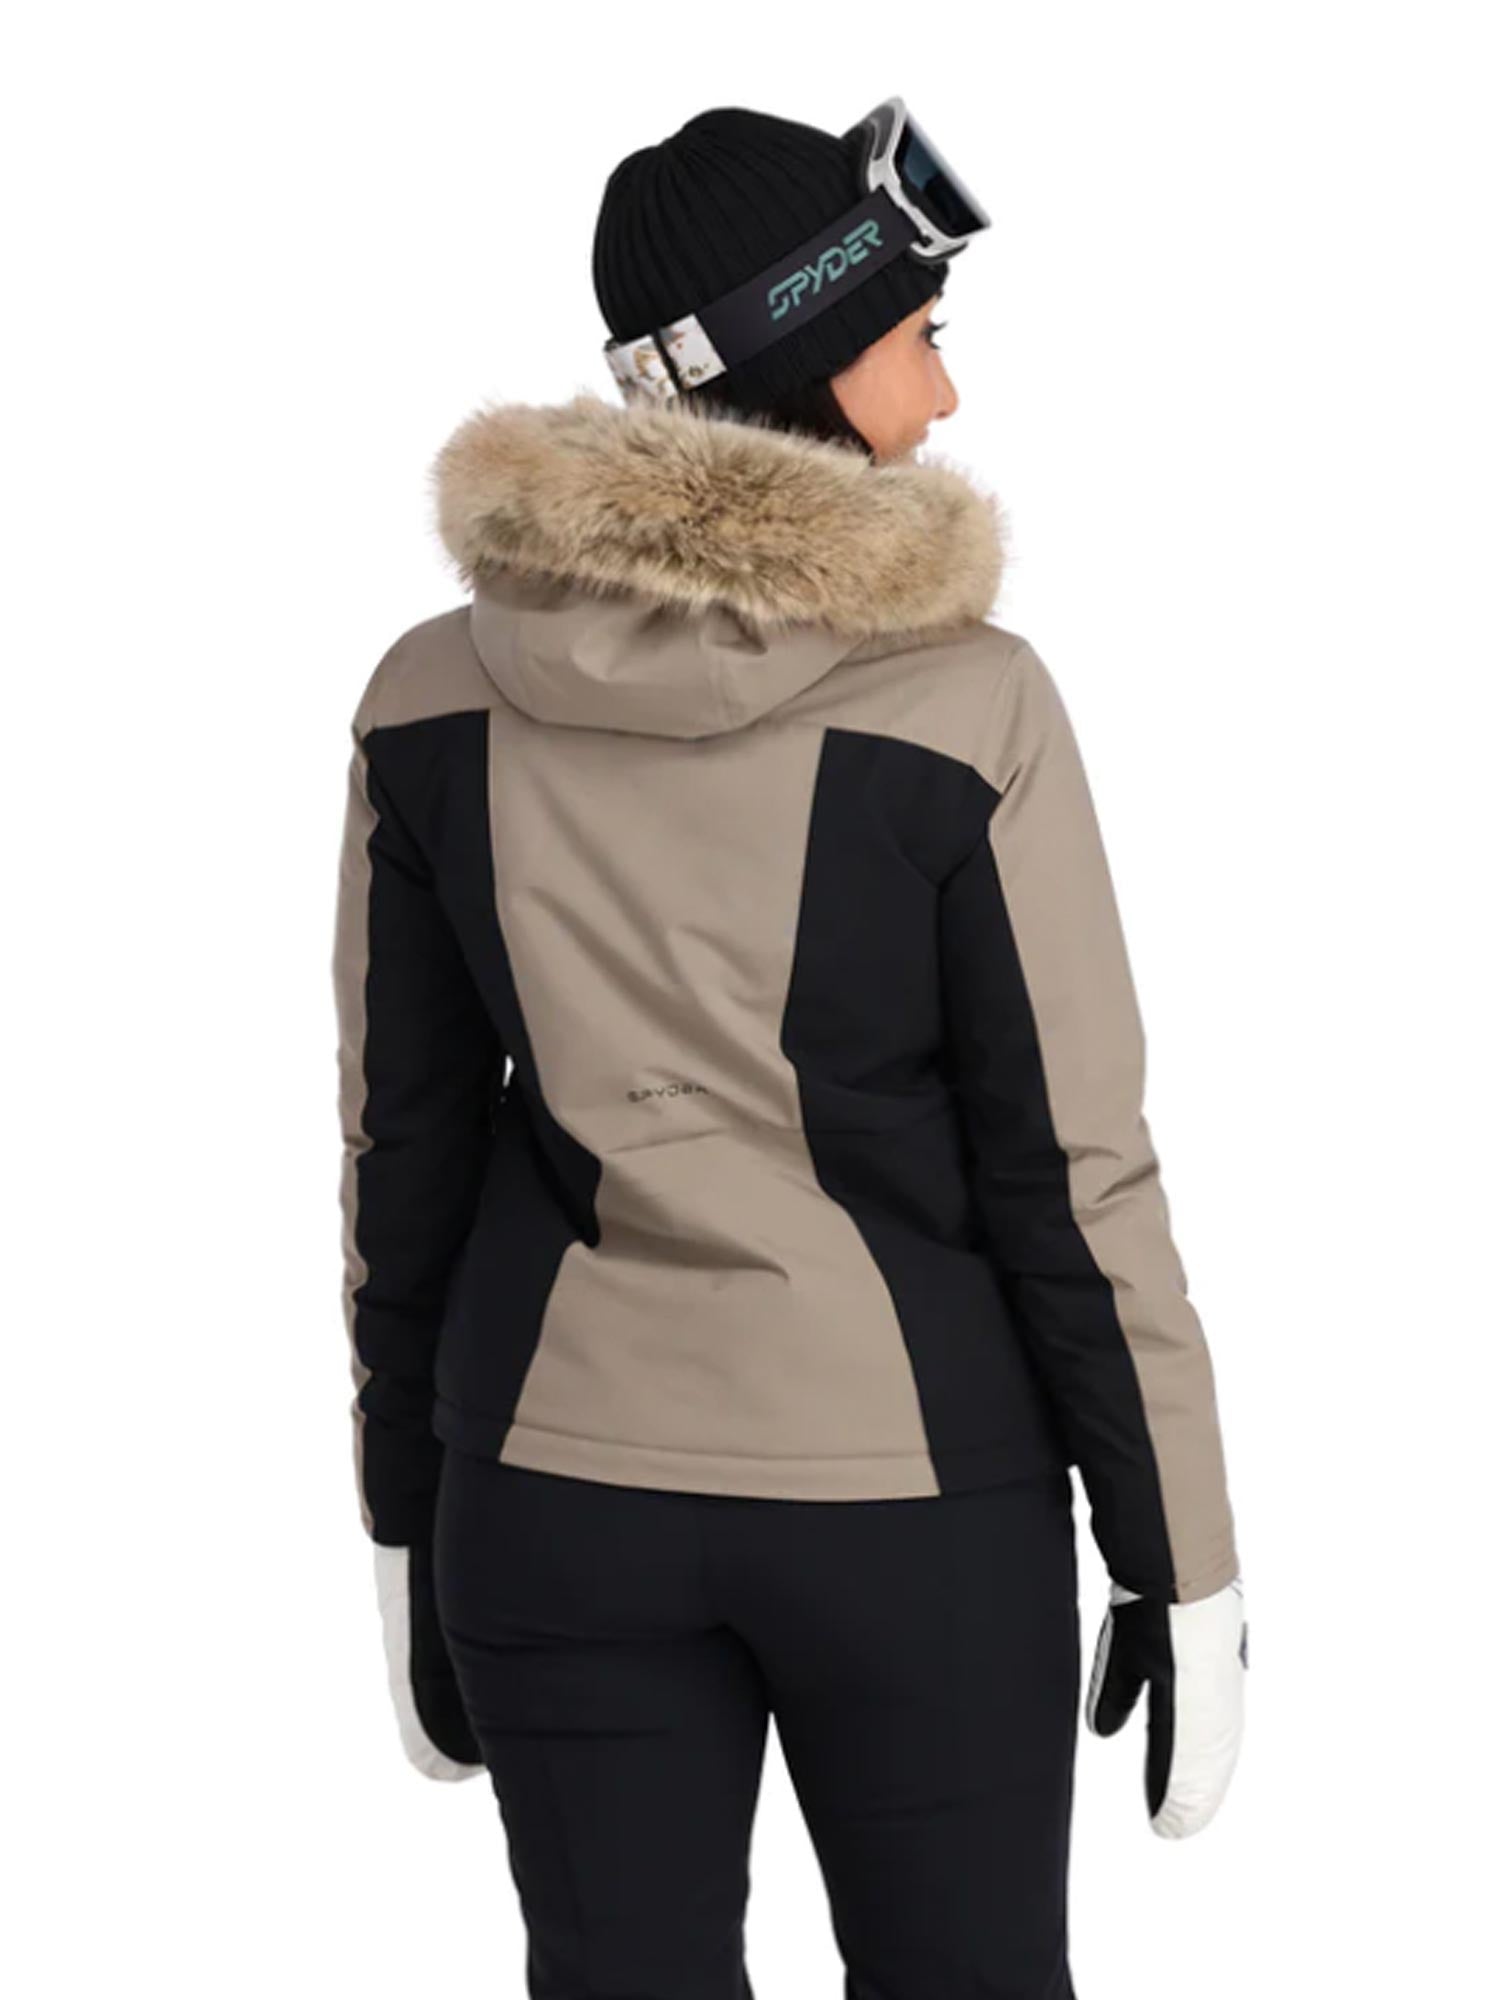 champagne and black Spyder Vida ski jacket with fur hood